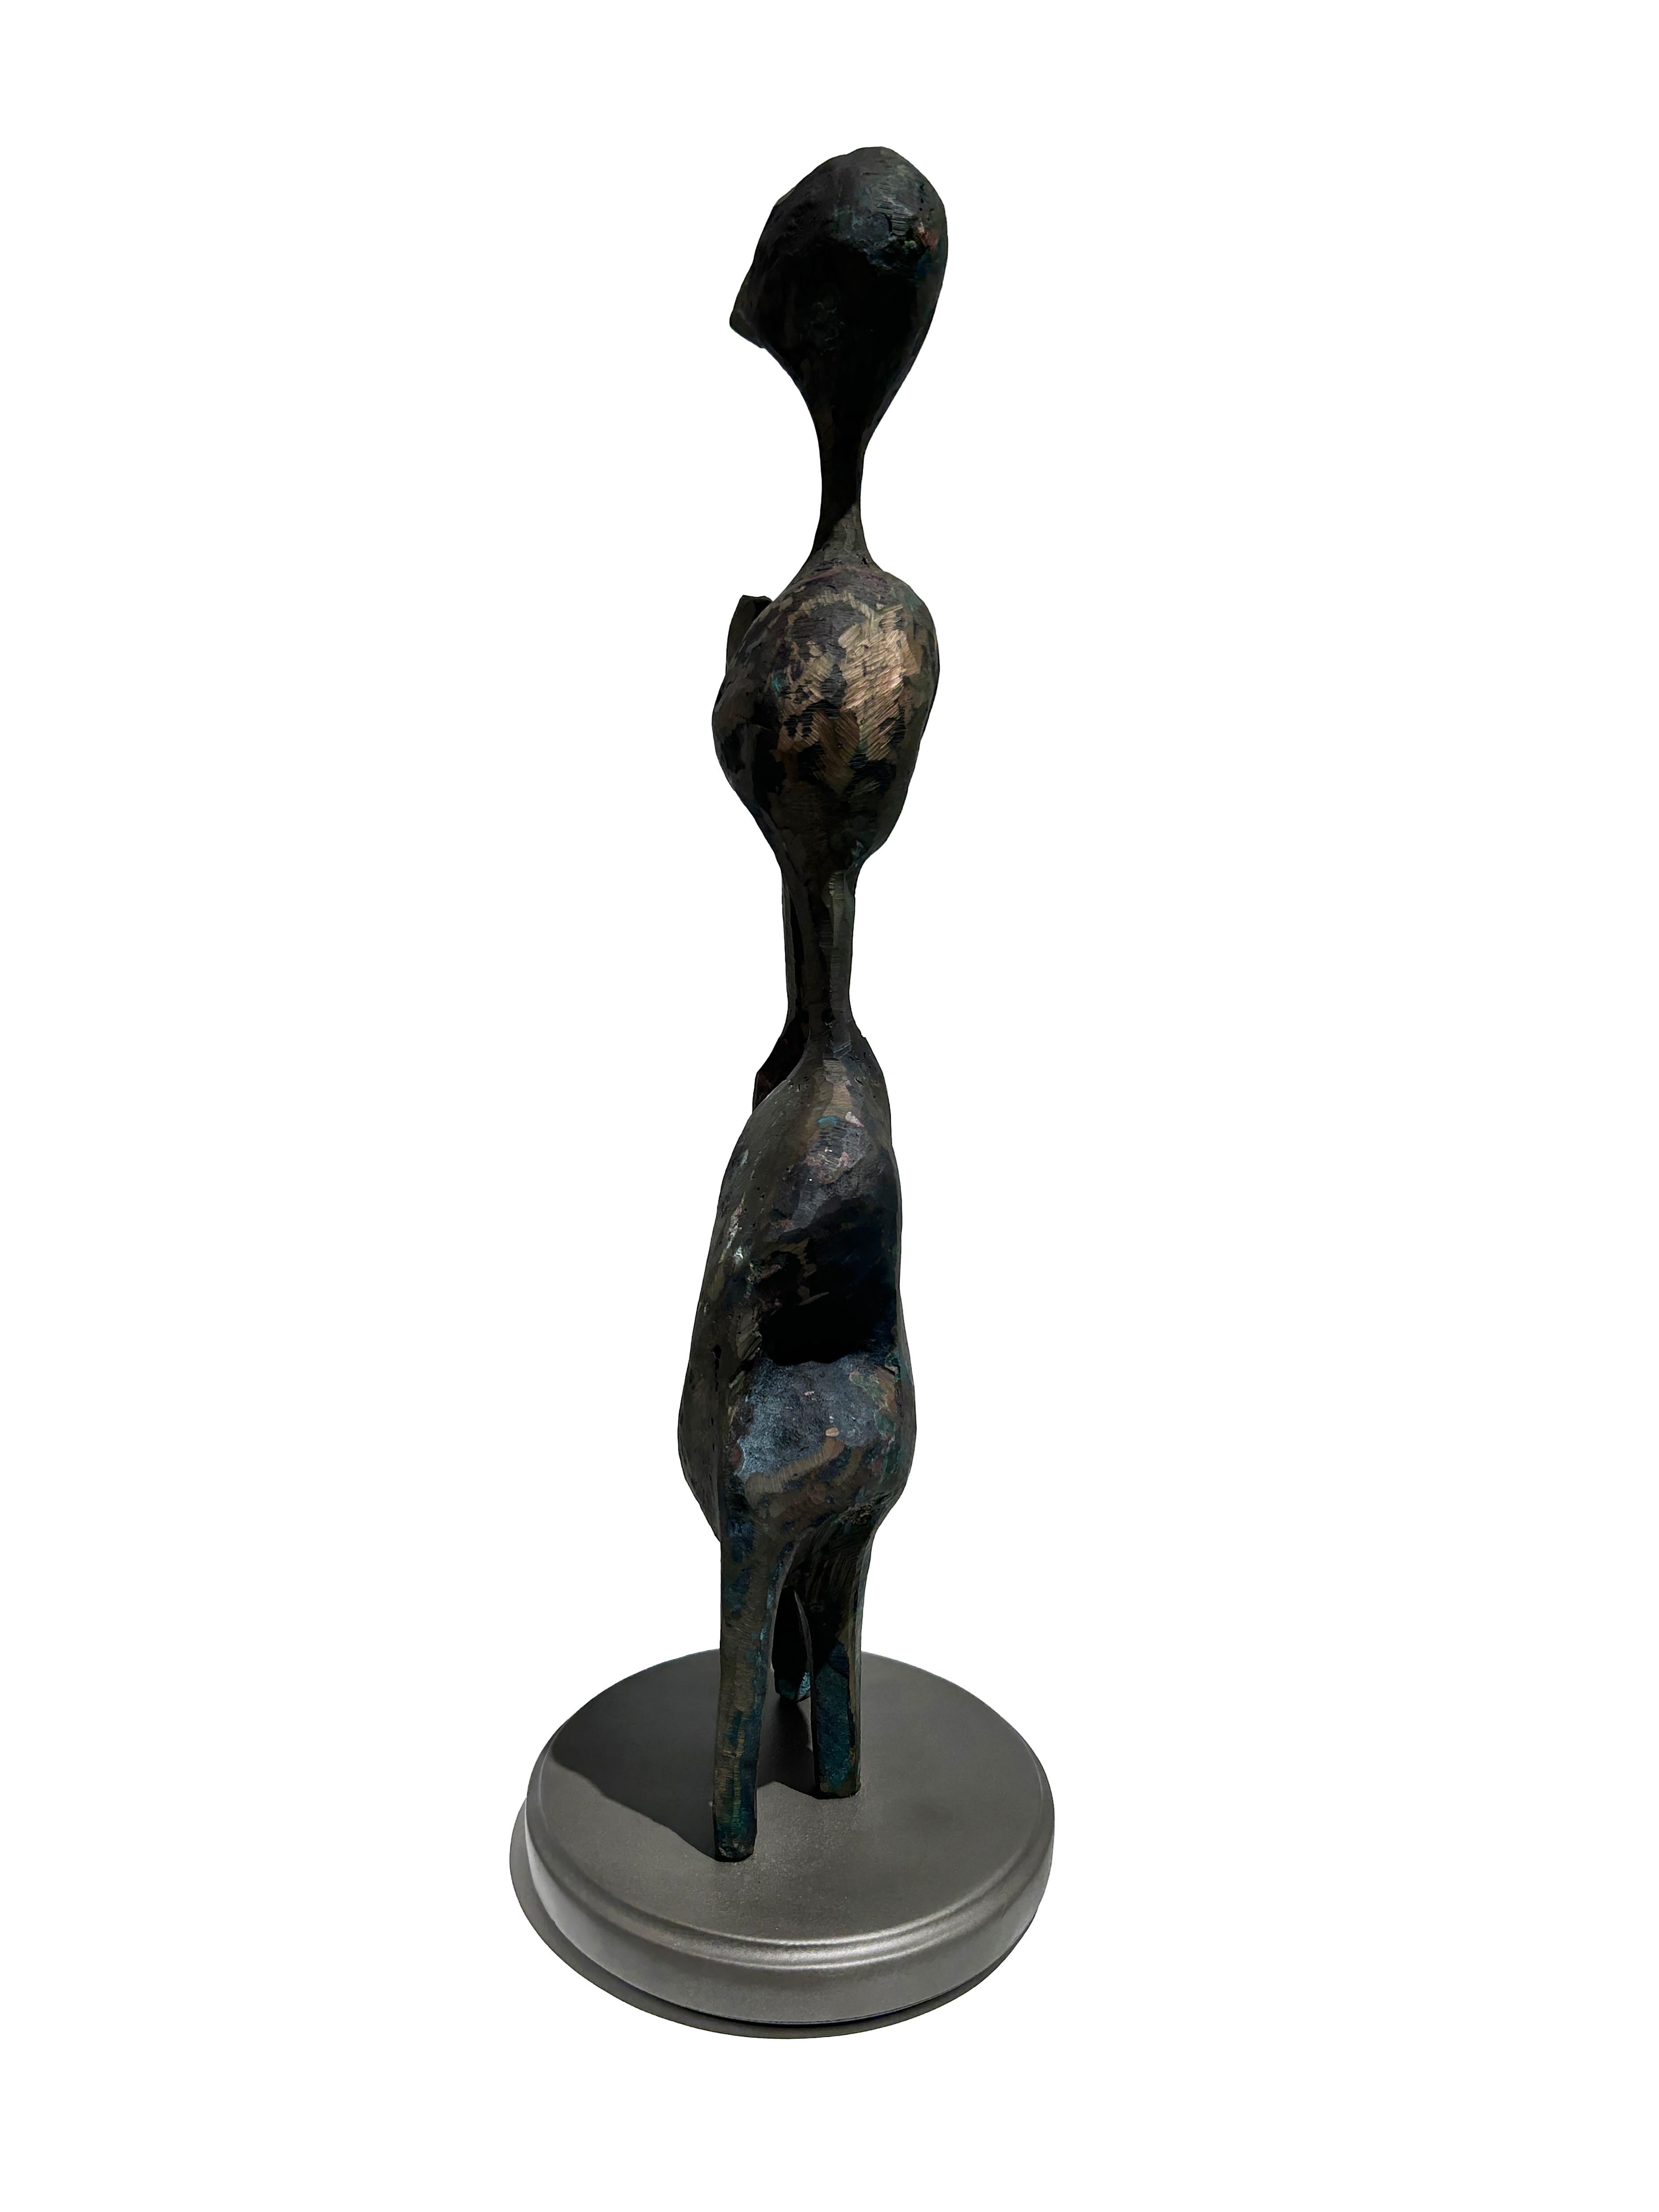 David Hayes (1931 - 2013)
Griffon, vers 1963
Sculpture en bronze à patine noire
28 x 8 x 4 in